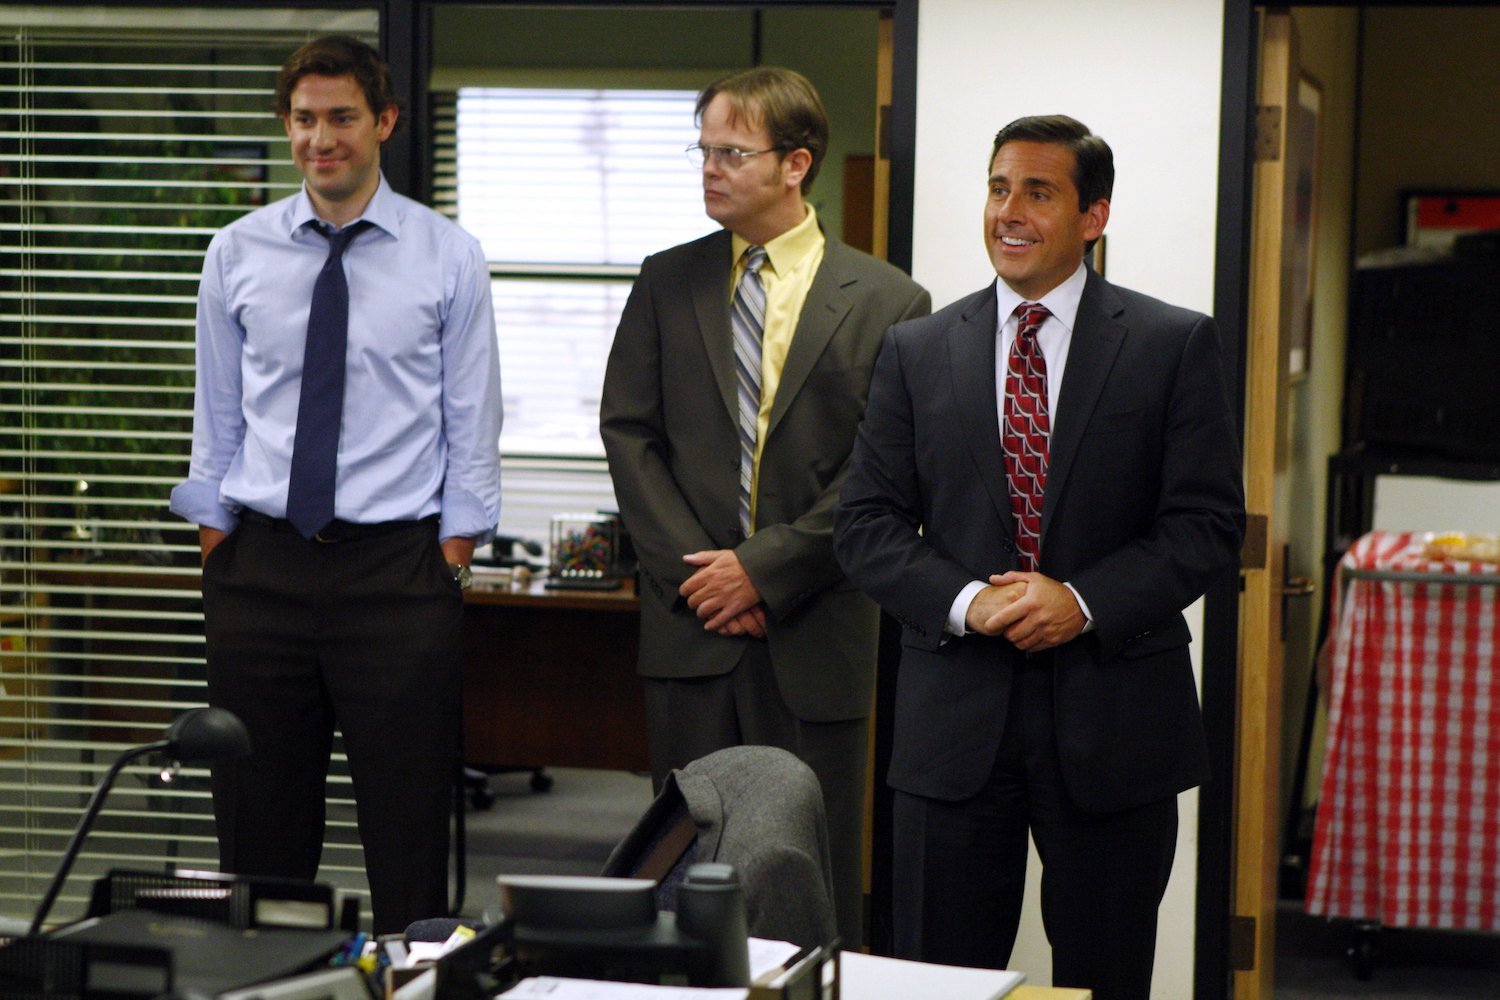 The Office: John Krasinski as Jim Halpert, Rainn Wilson as Dwight Schrute, and Steve Carell as Michael Scott